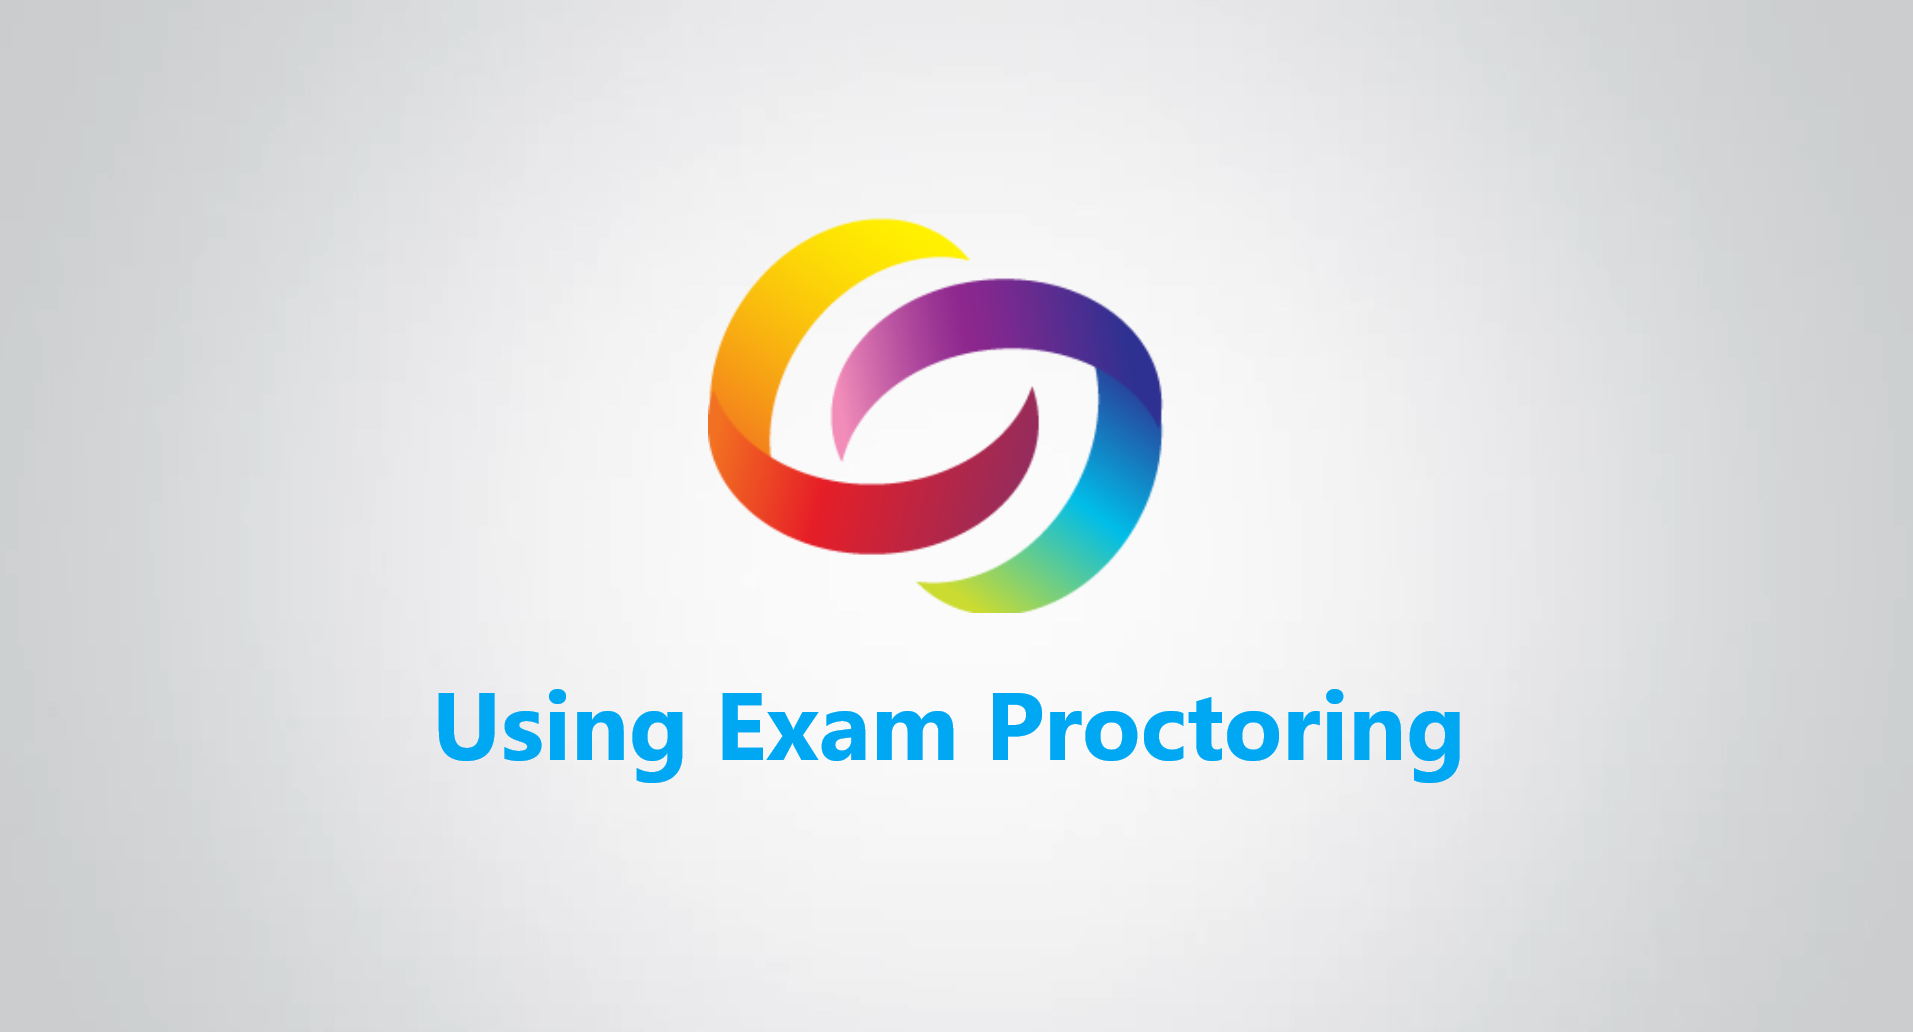 Using Exam Proctoring